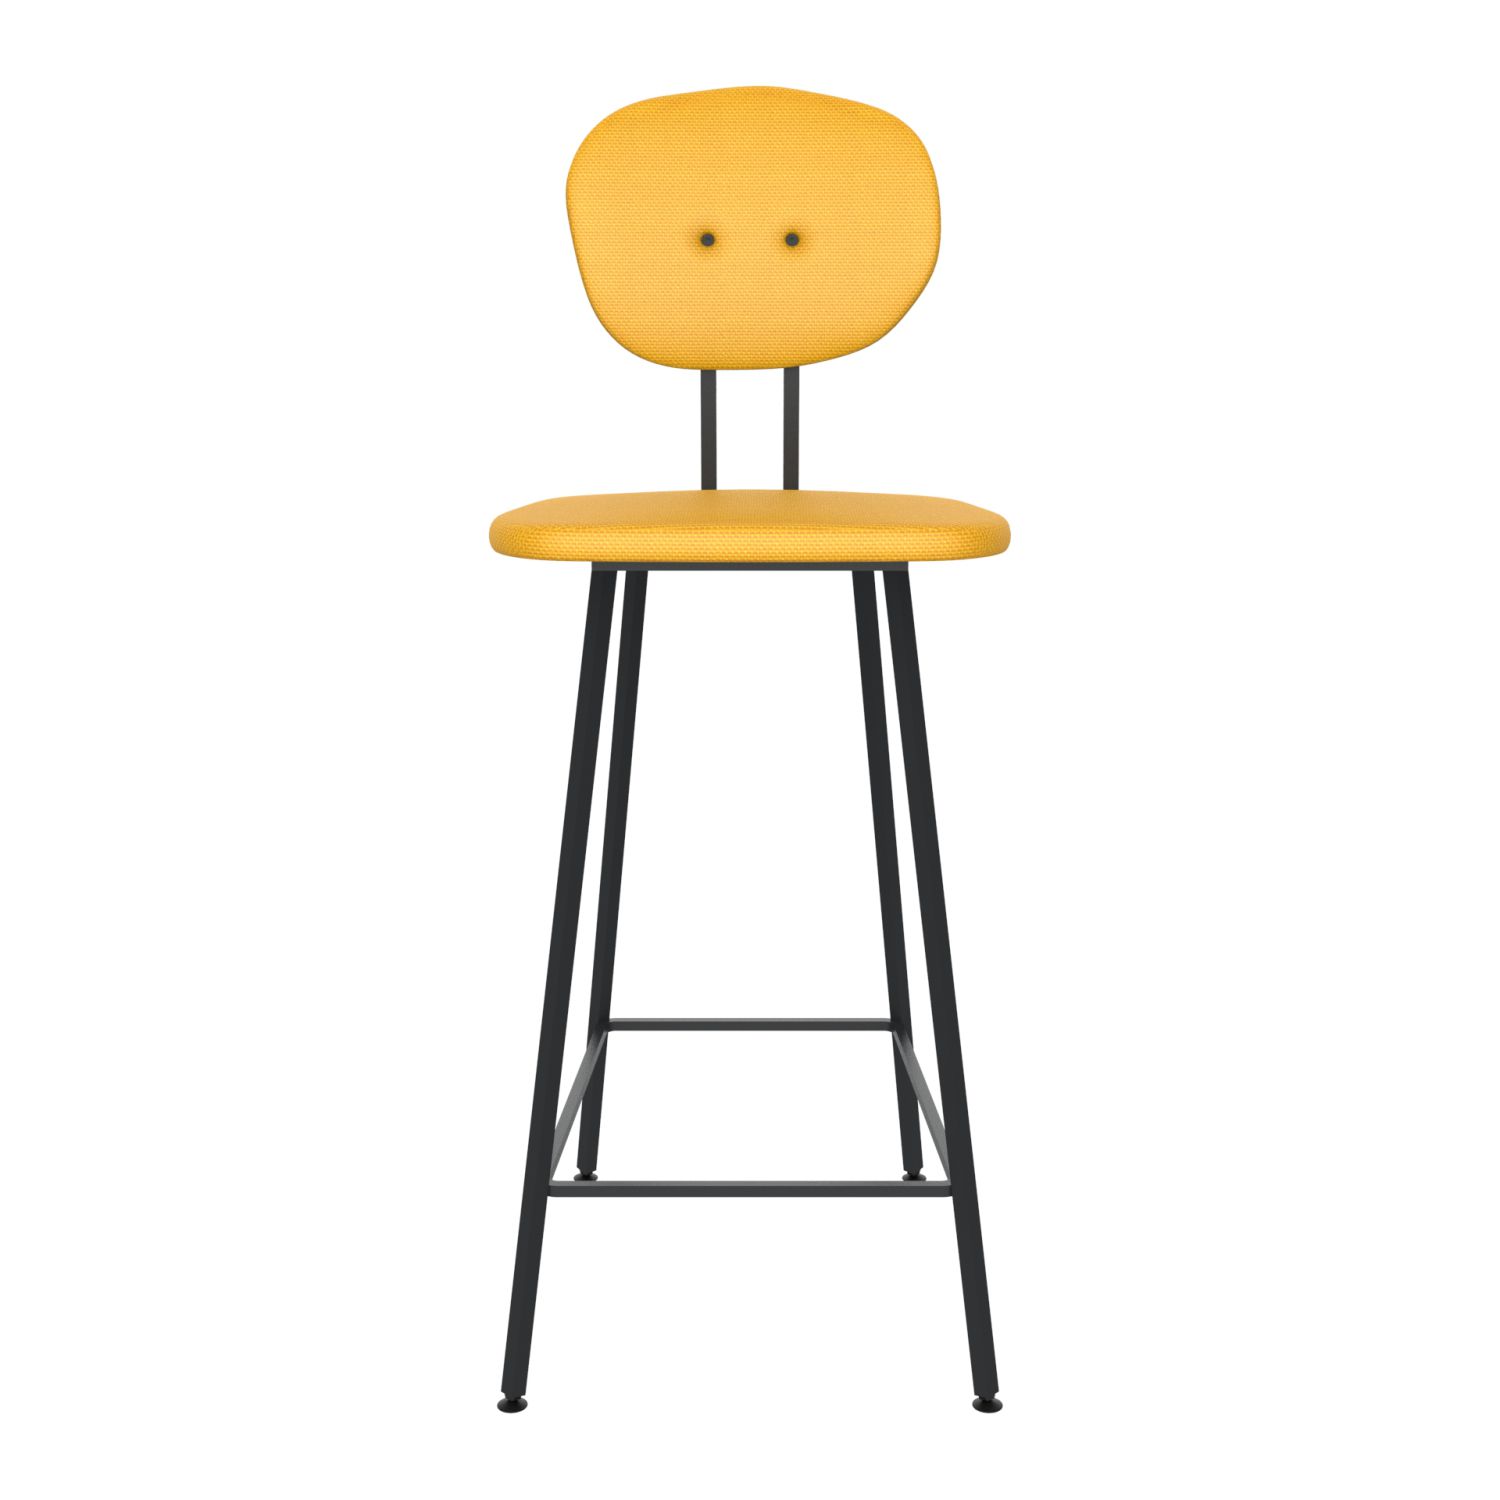 maarten baas barstool 75 cm without armrests backrest a lemon yellow 051 frame black